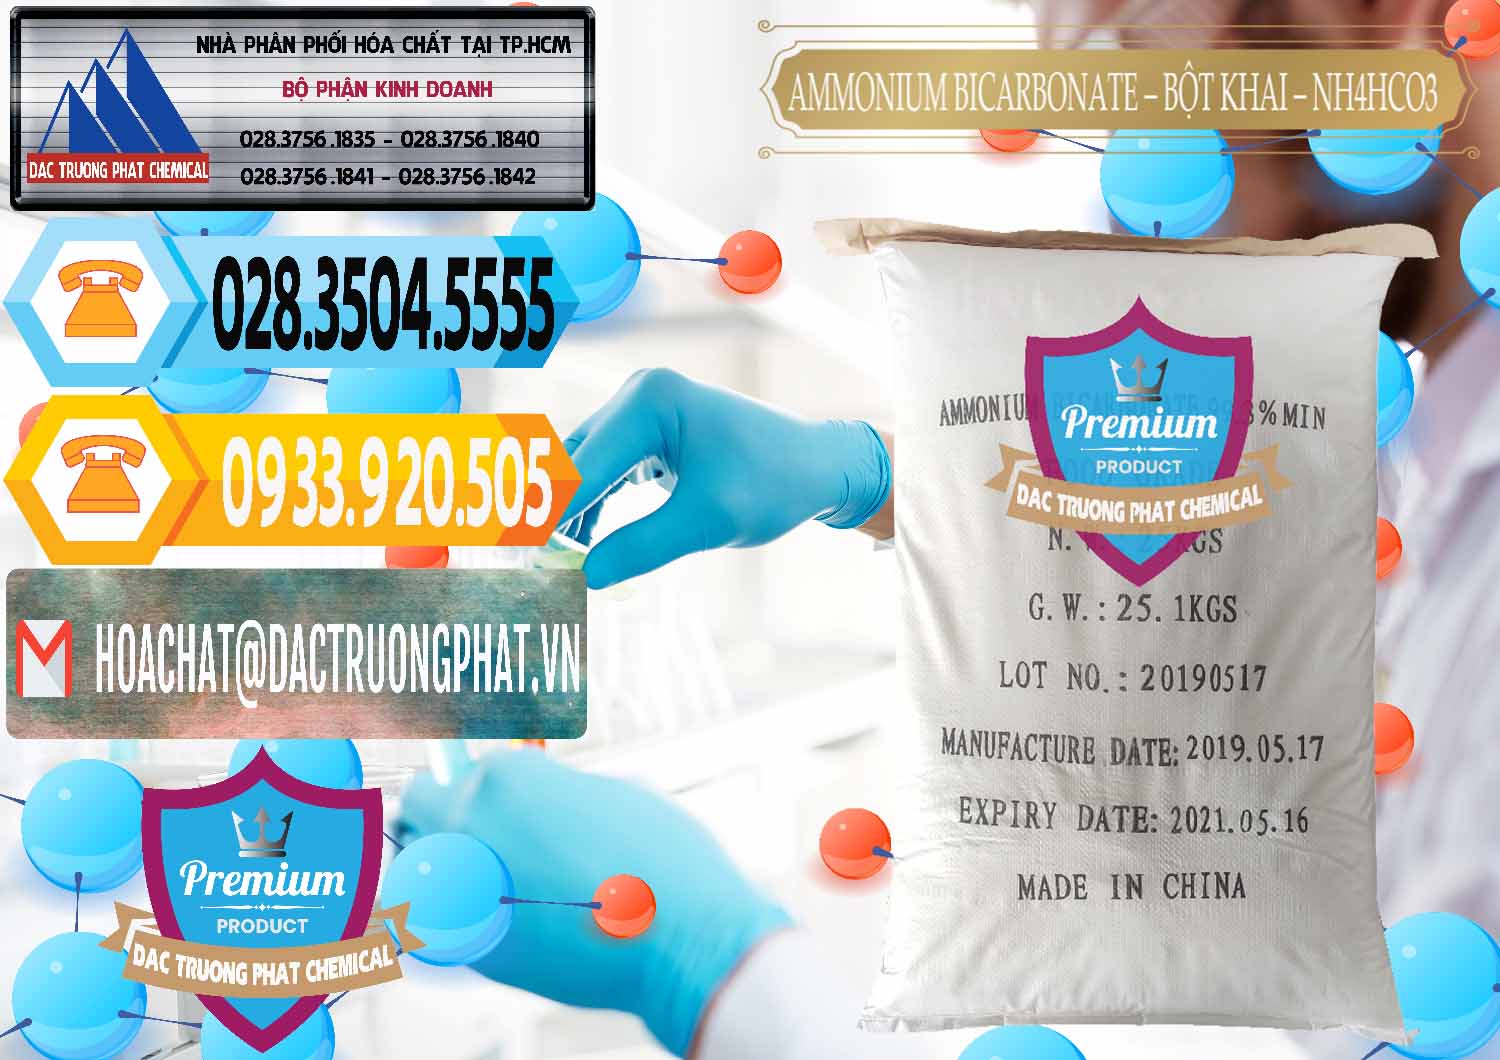 Bán Ammonium Bicarbonate - Bột Khai Food Grade Trung Quốc China - 0018 - Phân phối - nhập khẩu hóa chất tại TP.HCM - hoachattayrua.net